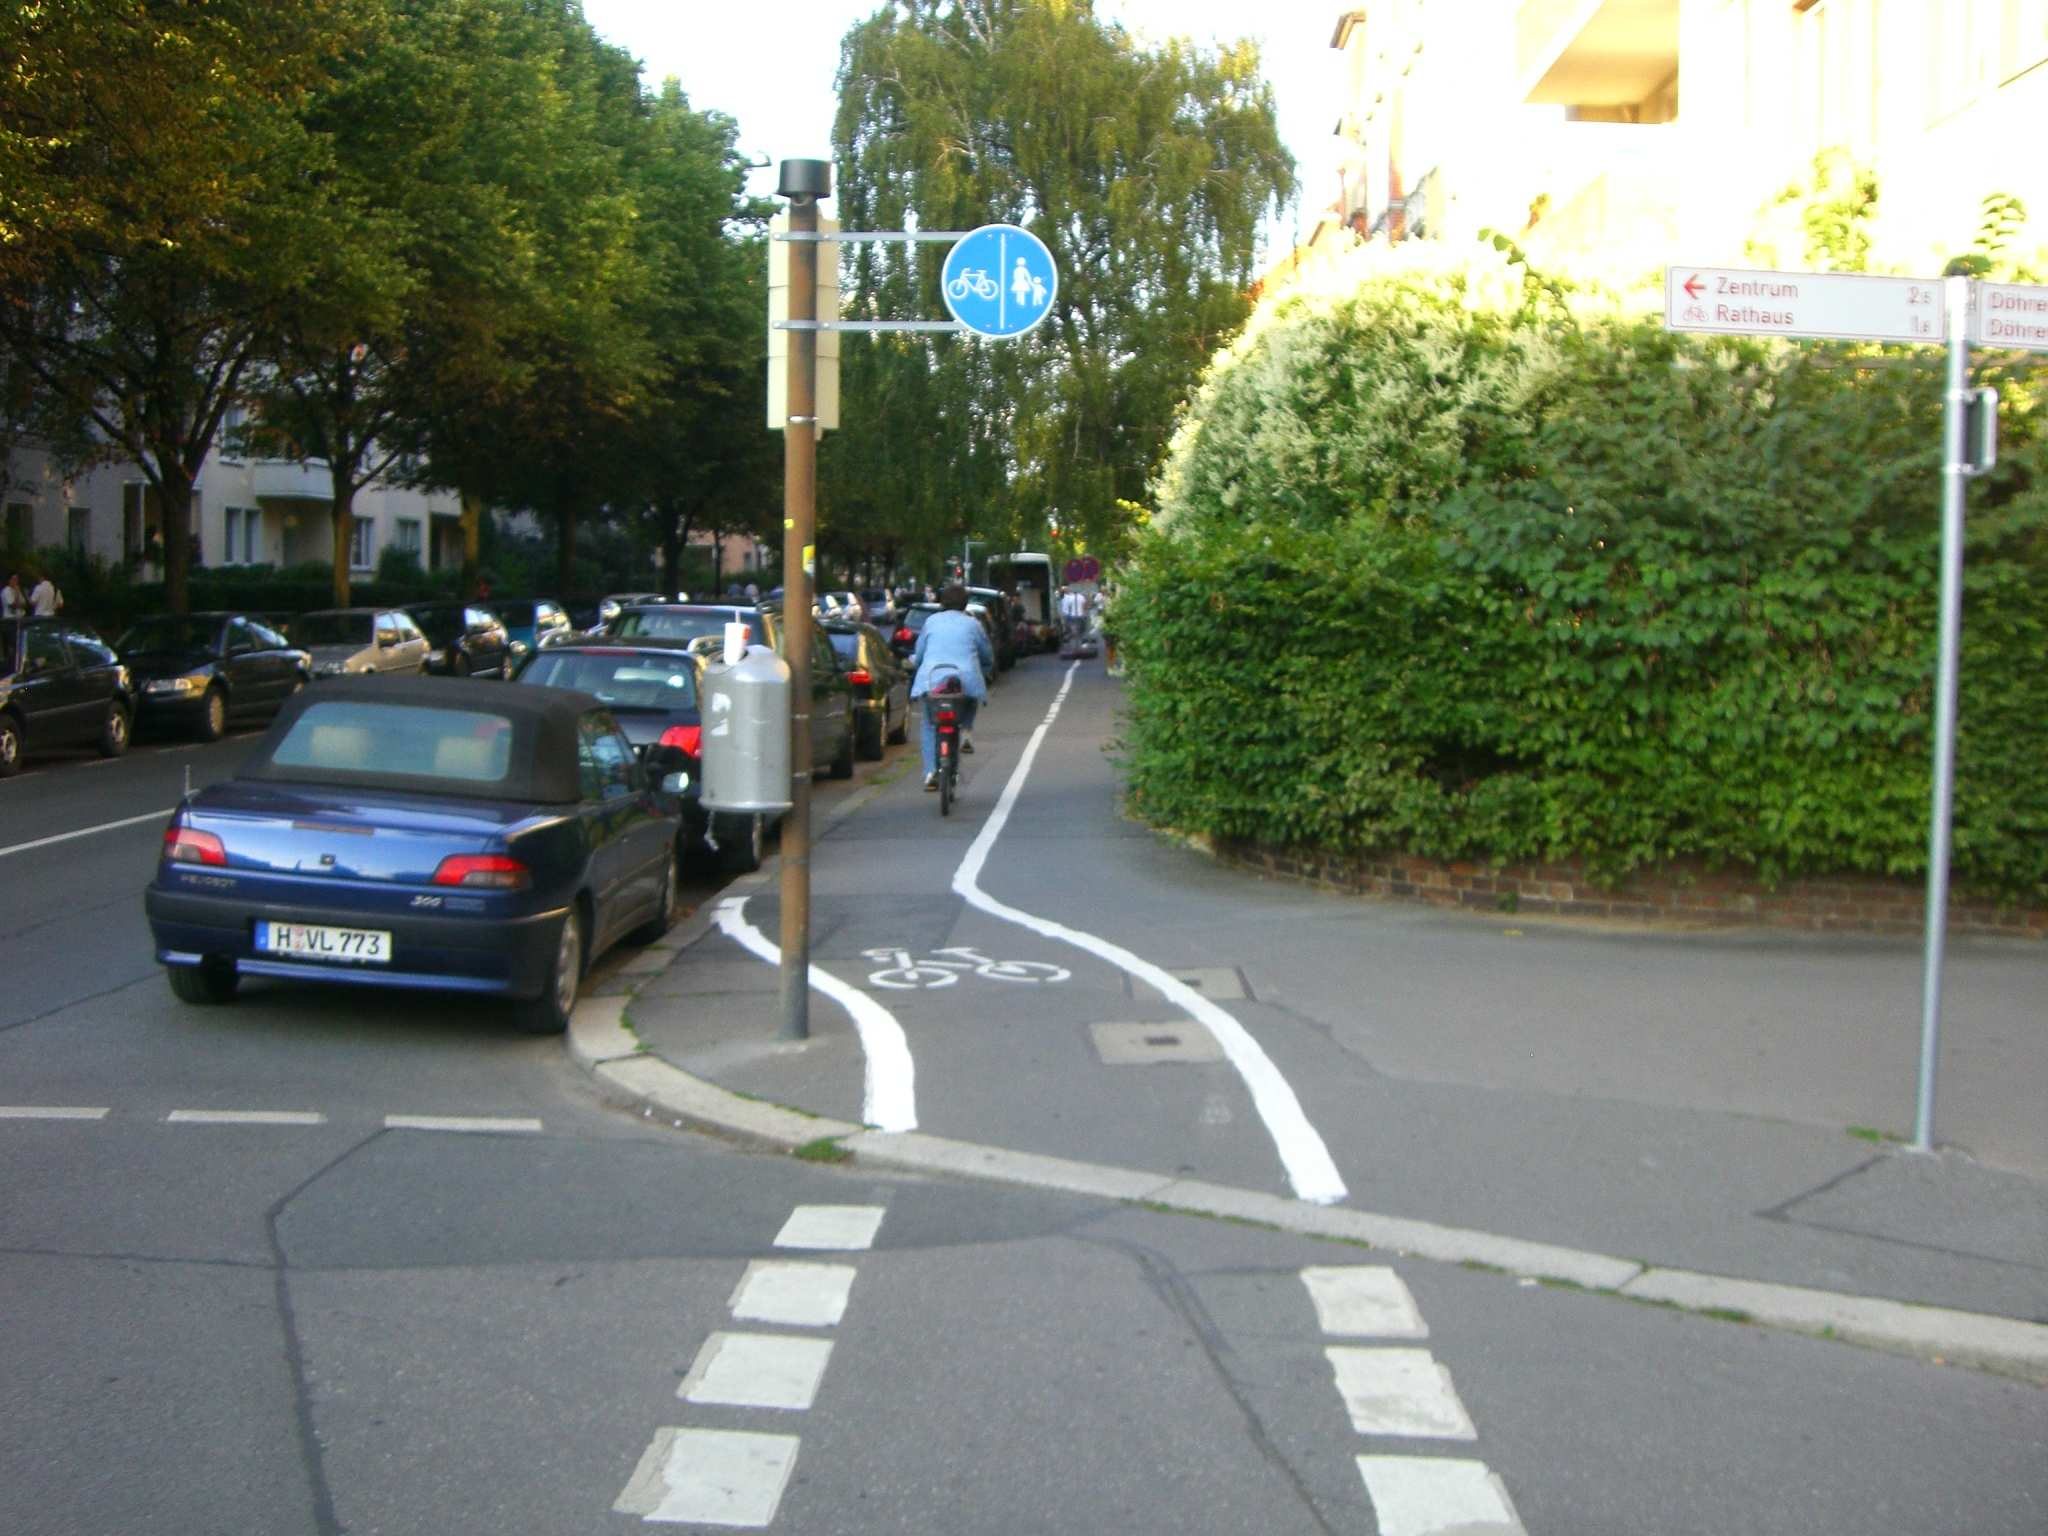 Exkurs Radwegebenutzungspflicht Radwege dürfen nur als benutzungspflichtig ausgewiesen werden, wenn - dies aus Gründen der Verkehrssicherheit und des Verkehrsablaufs tatsächlich erforderlich ist -